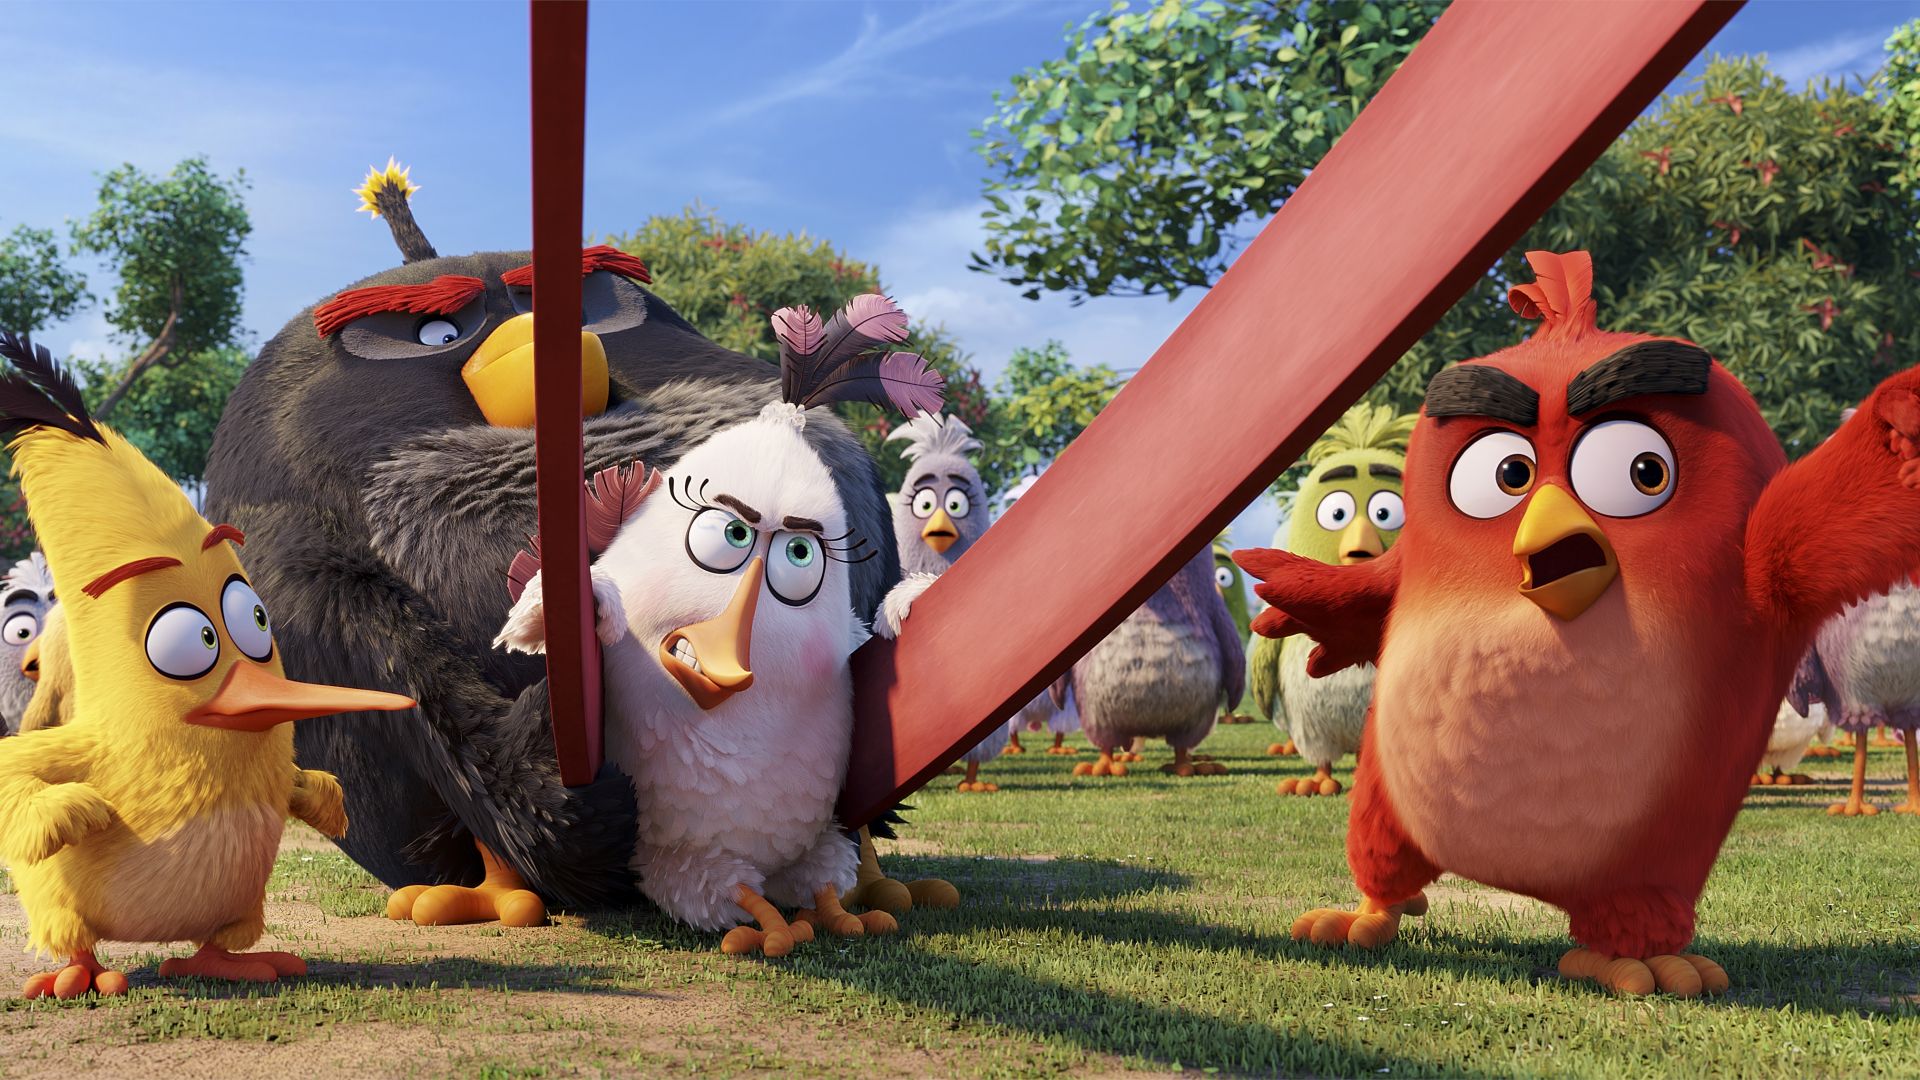 Angry Birds Movie, Красный, Бомбочка, Чак, Лучшие мультфильмы 2016, Angry Birds Movie, chuck, red, bomb, Best Animation Movies of 2016 (horizontal)